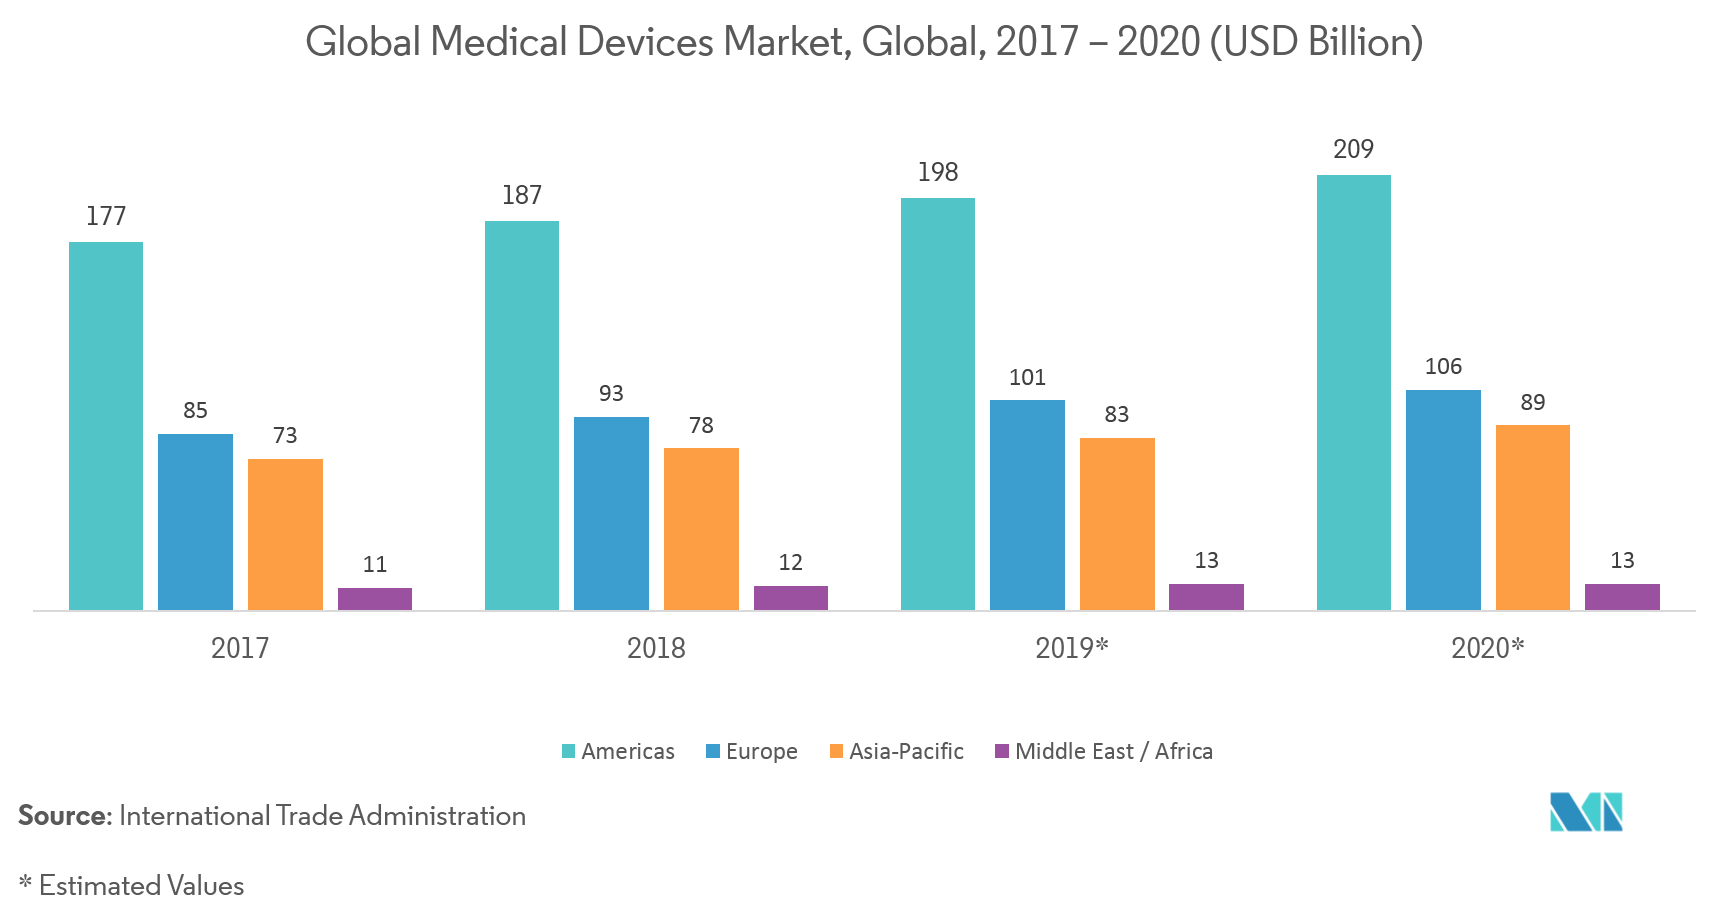 Mercado de equipamentos de deposição física de vapor (PVD) Mercado Global de Dispositivos Médicos, Global, 2017-2020 (US$ Bilhões)